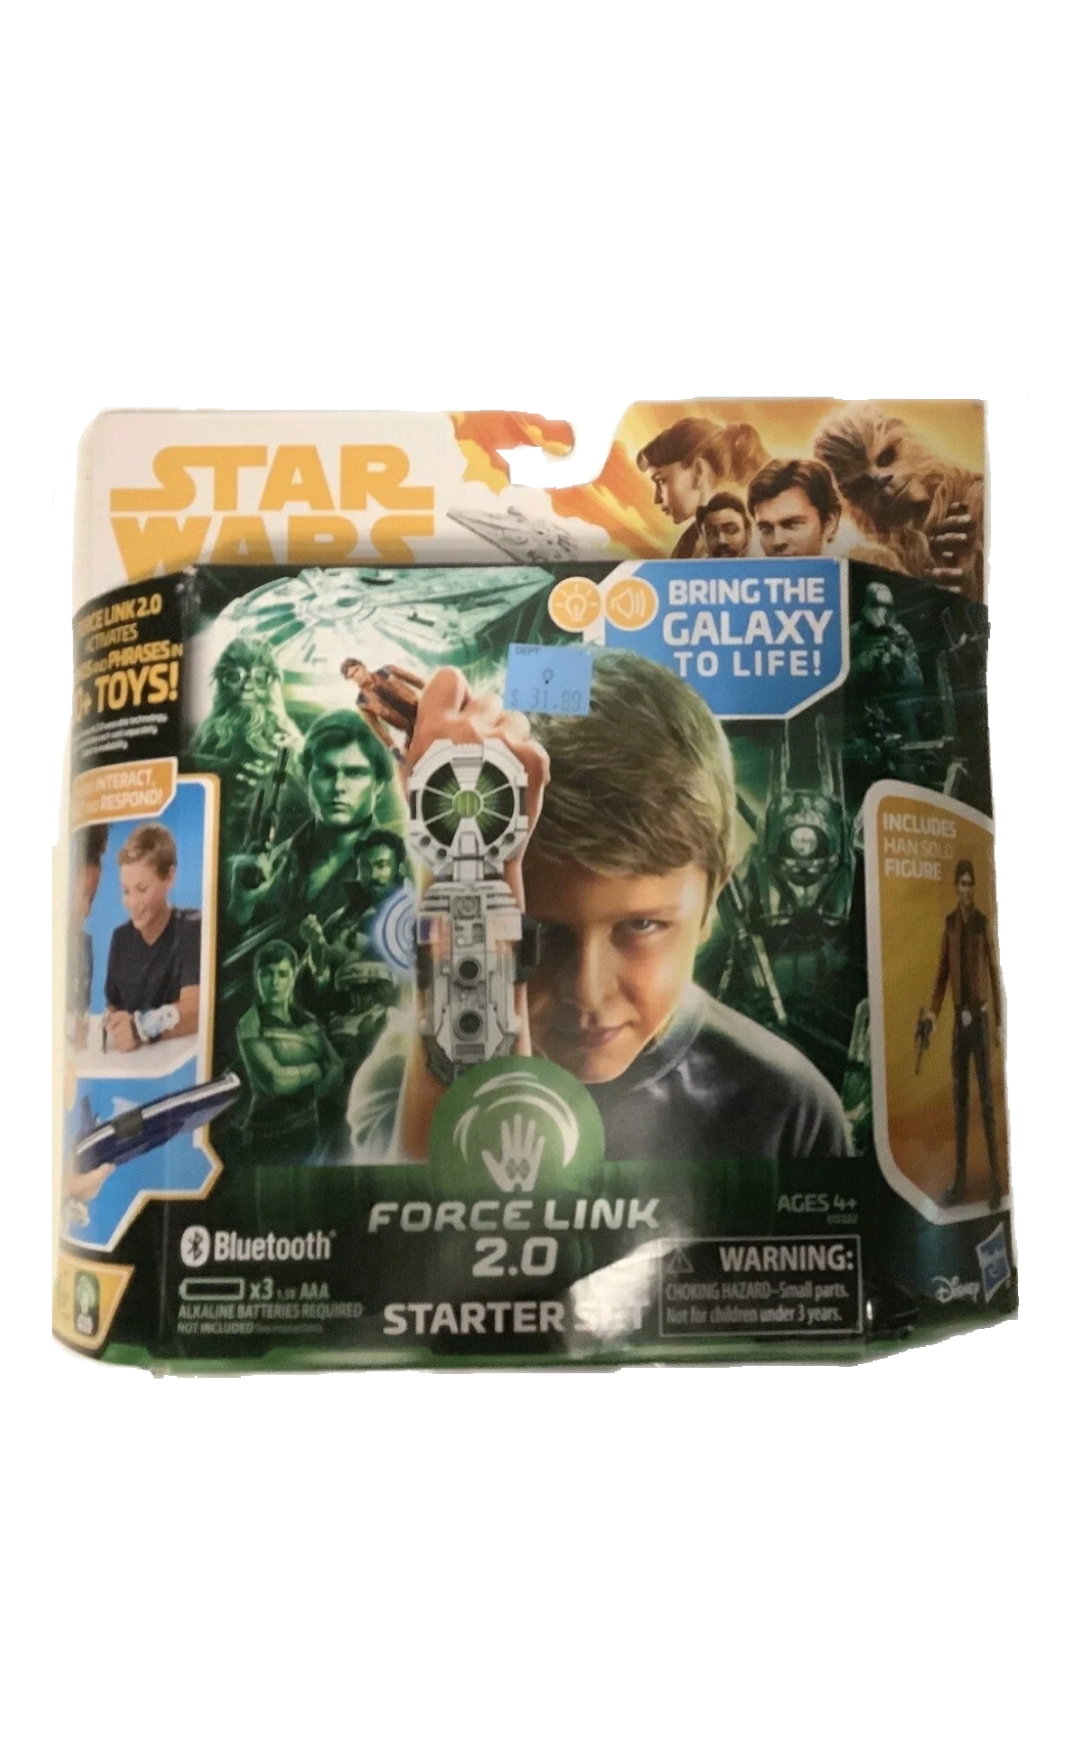 Star wars forcelink